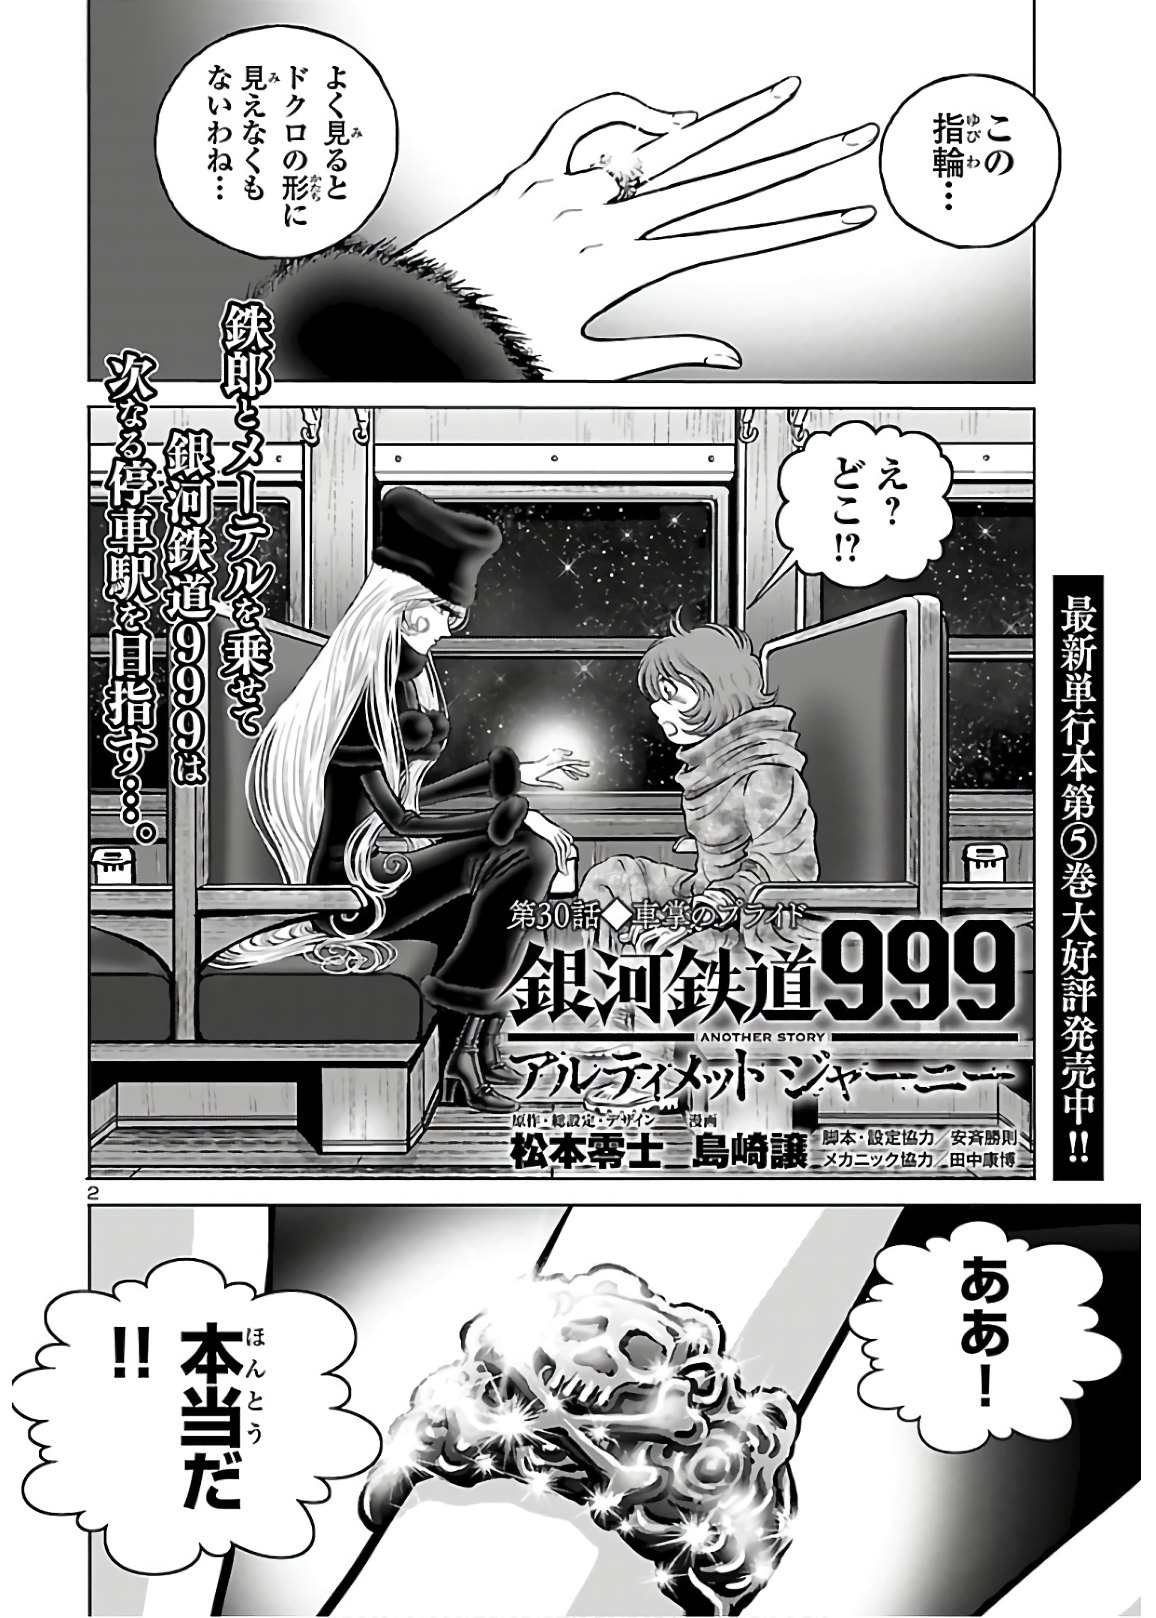 銀河鉄道999–Another Story–アルティメットジャーニー 第30話 - Page 2